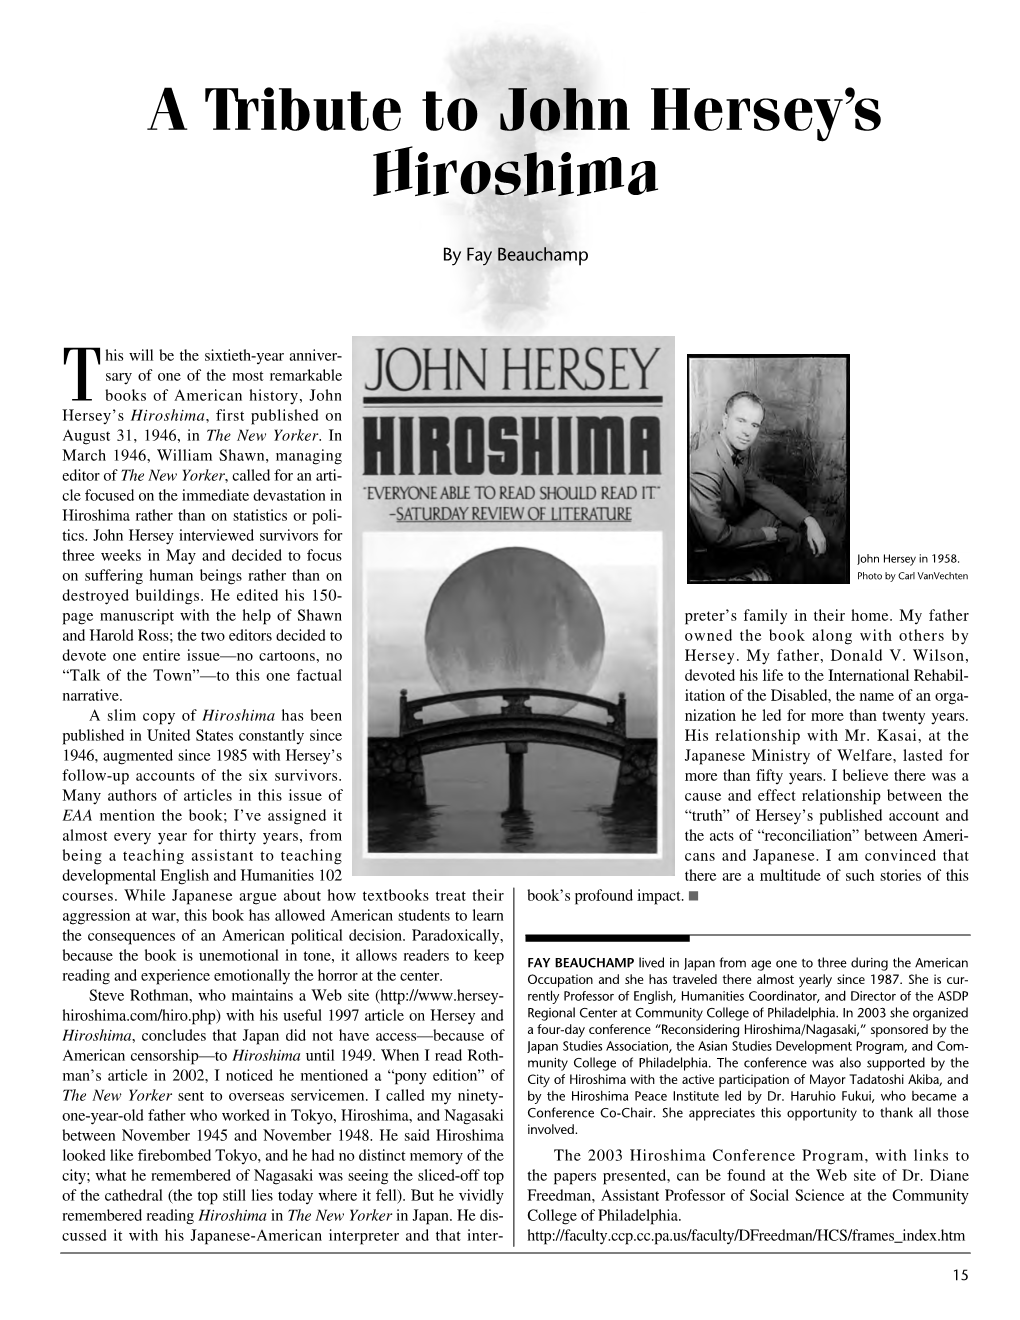 A Tribute to John Hersey's Hiroshima